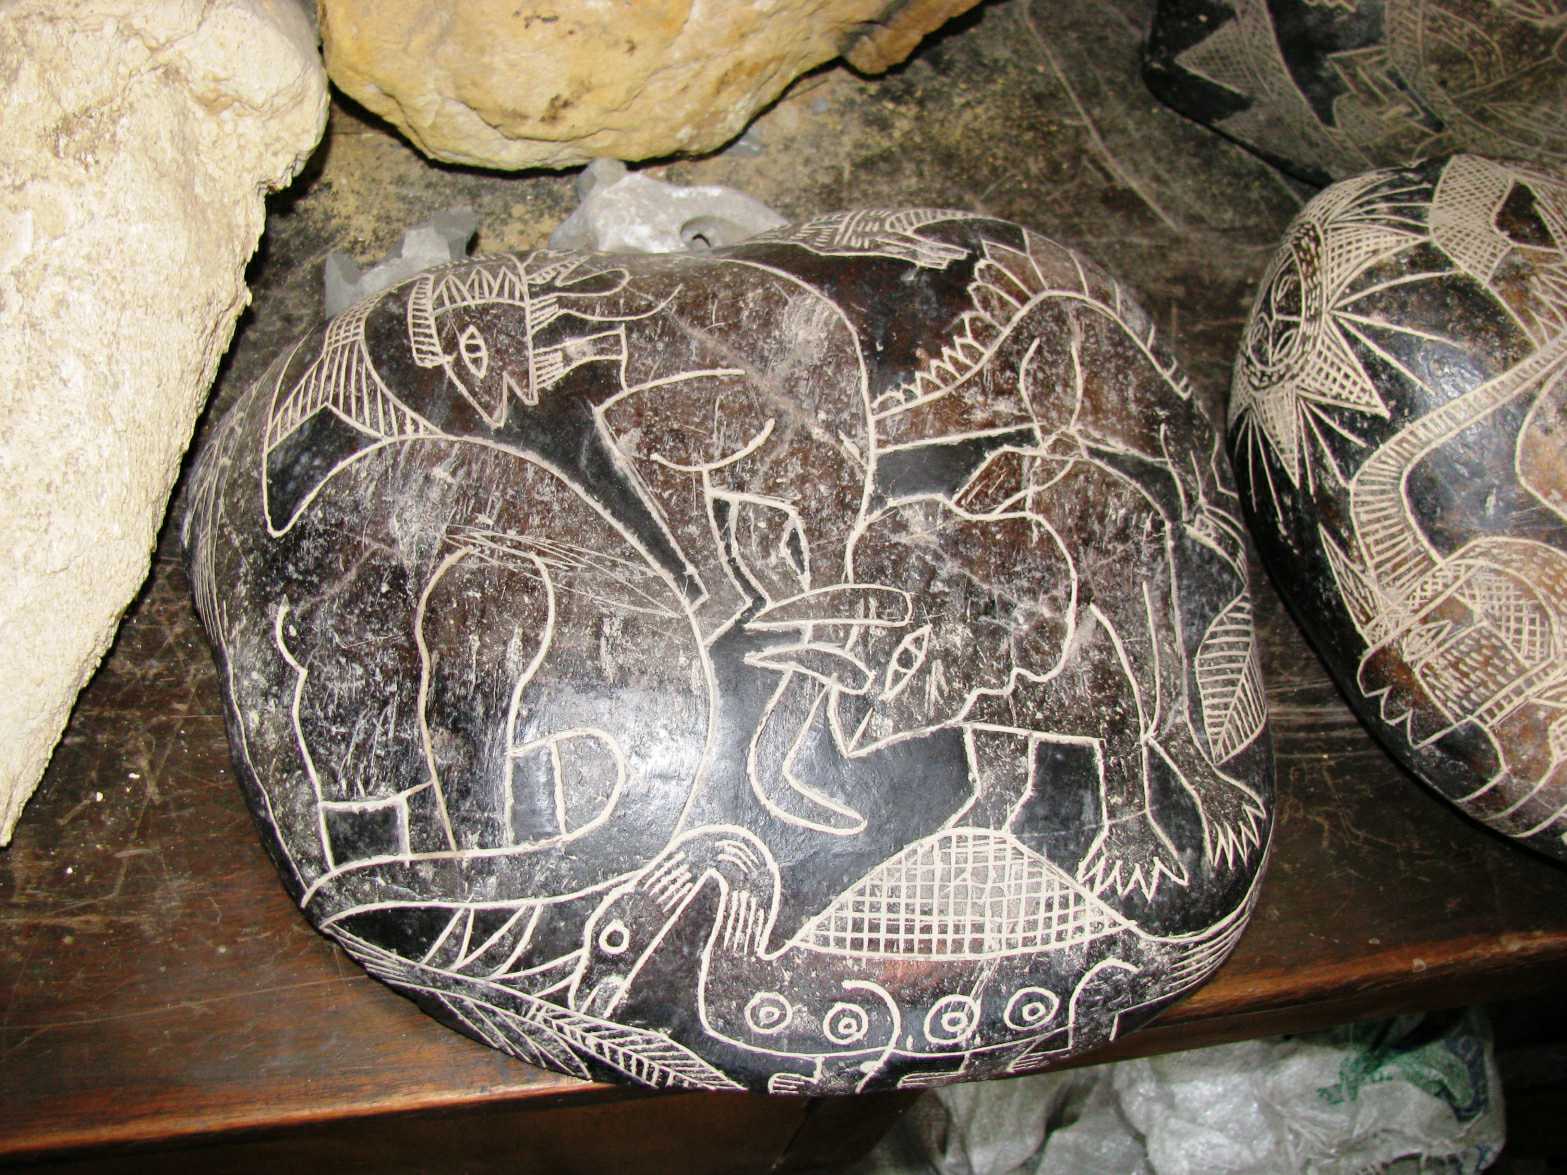 Ви, мабуть, ніколи не чули про гігантську глиняну вазу віком 2,400 років, знайдену в Перу 3